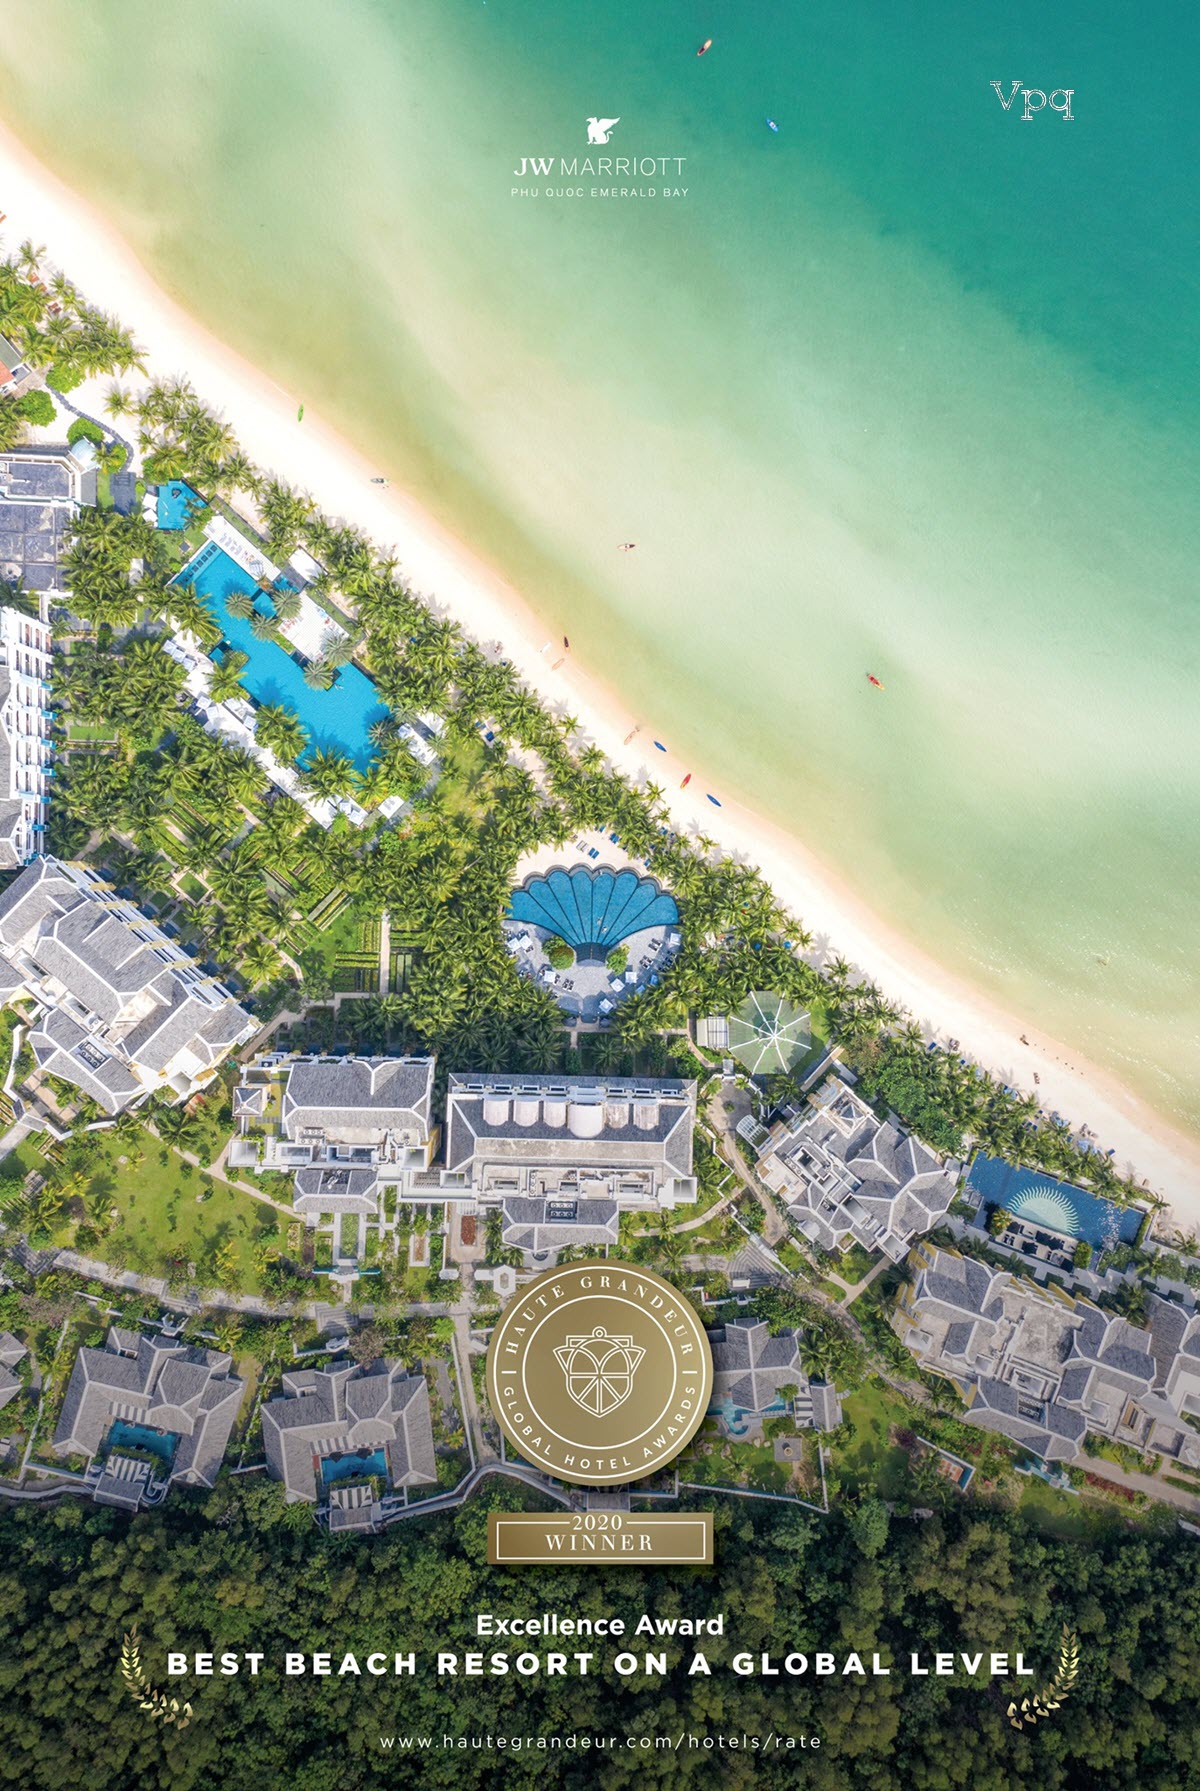 Haute Grandeur Global Awards 2020 vinh danh JW Marriott Phu Quoc Emerald Bay là "Khu nghỉ dưỡng biển tốt nhất toàn cầu"